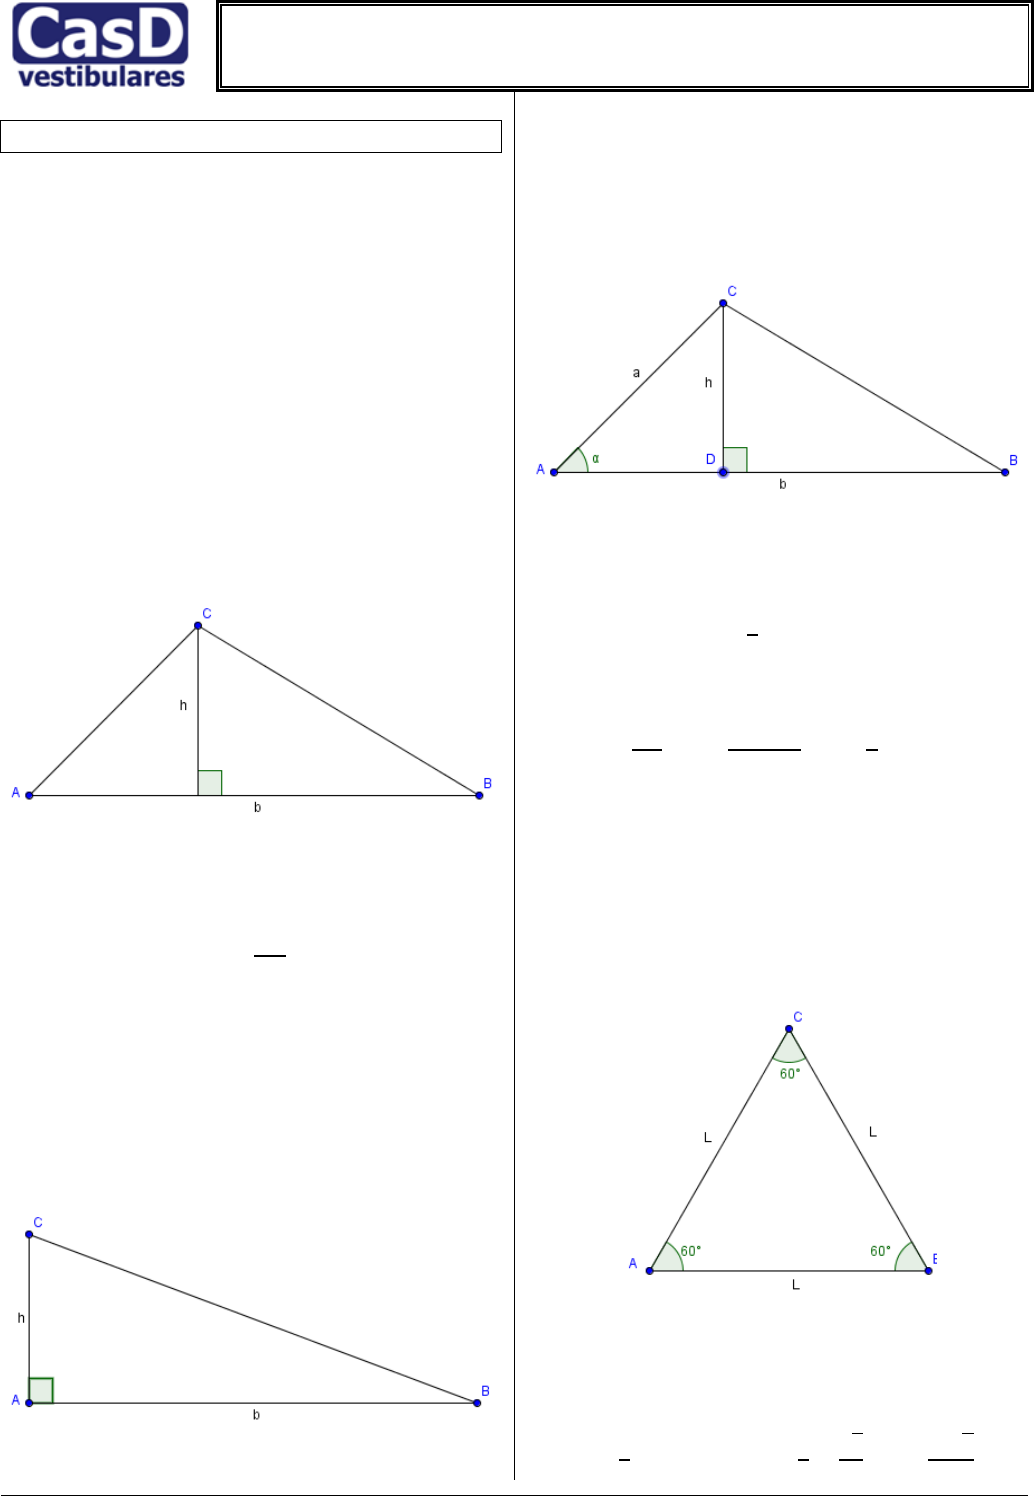 Jogo Quebra Cabeça Triângulo com 16 Peças Adaptado - Produtos